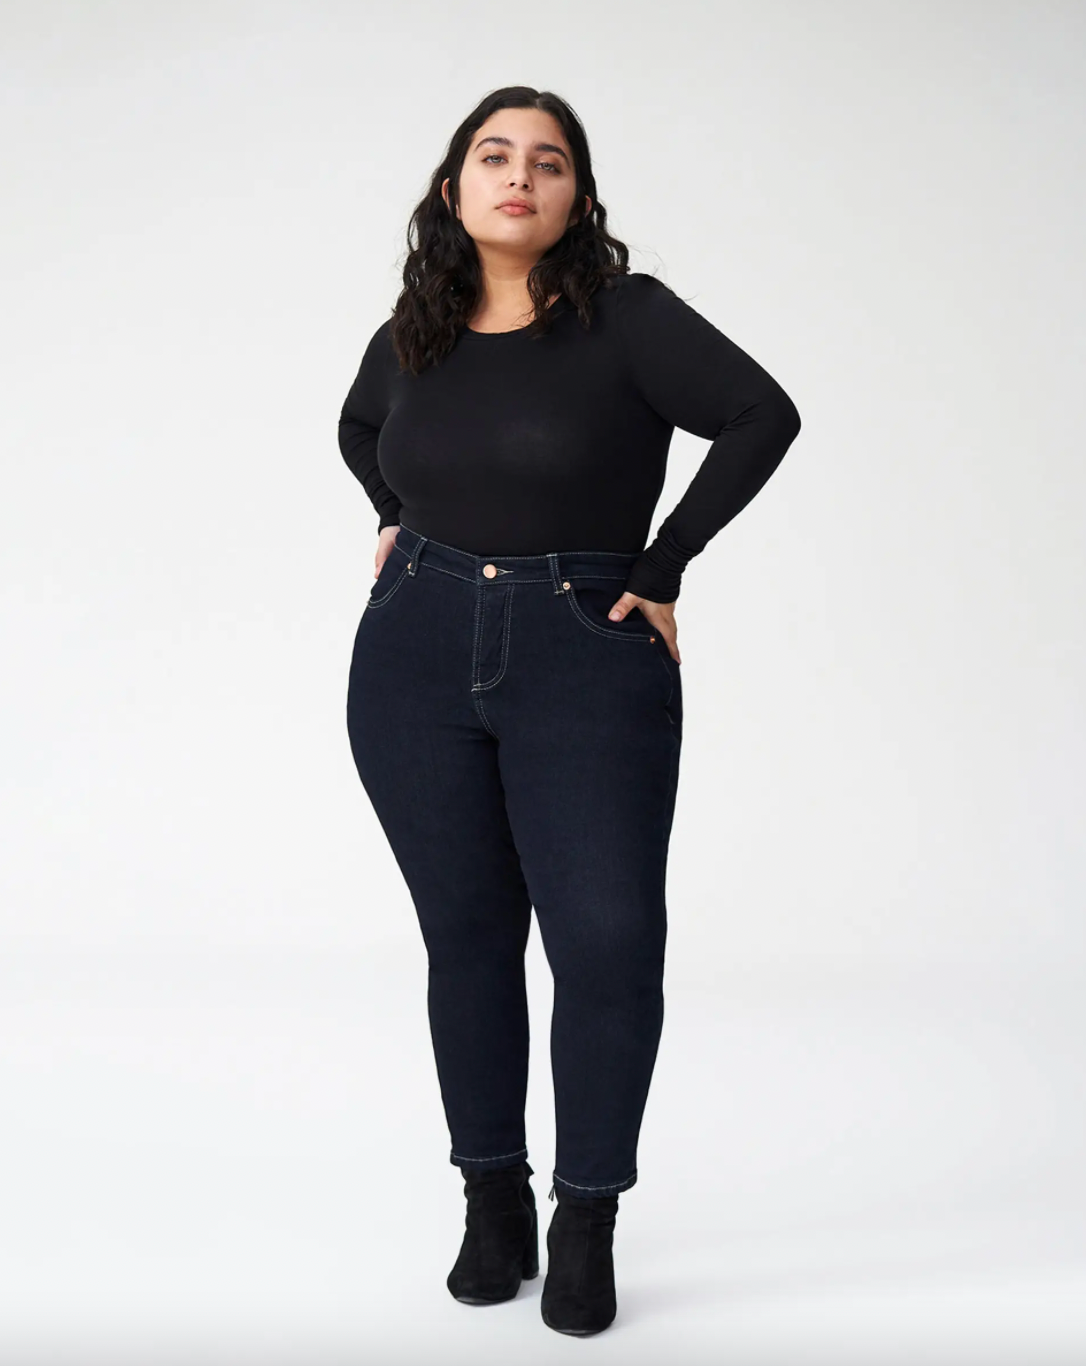 Women's Plus Size Jeans in Sizes 10-32